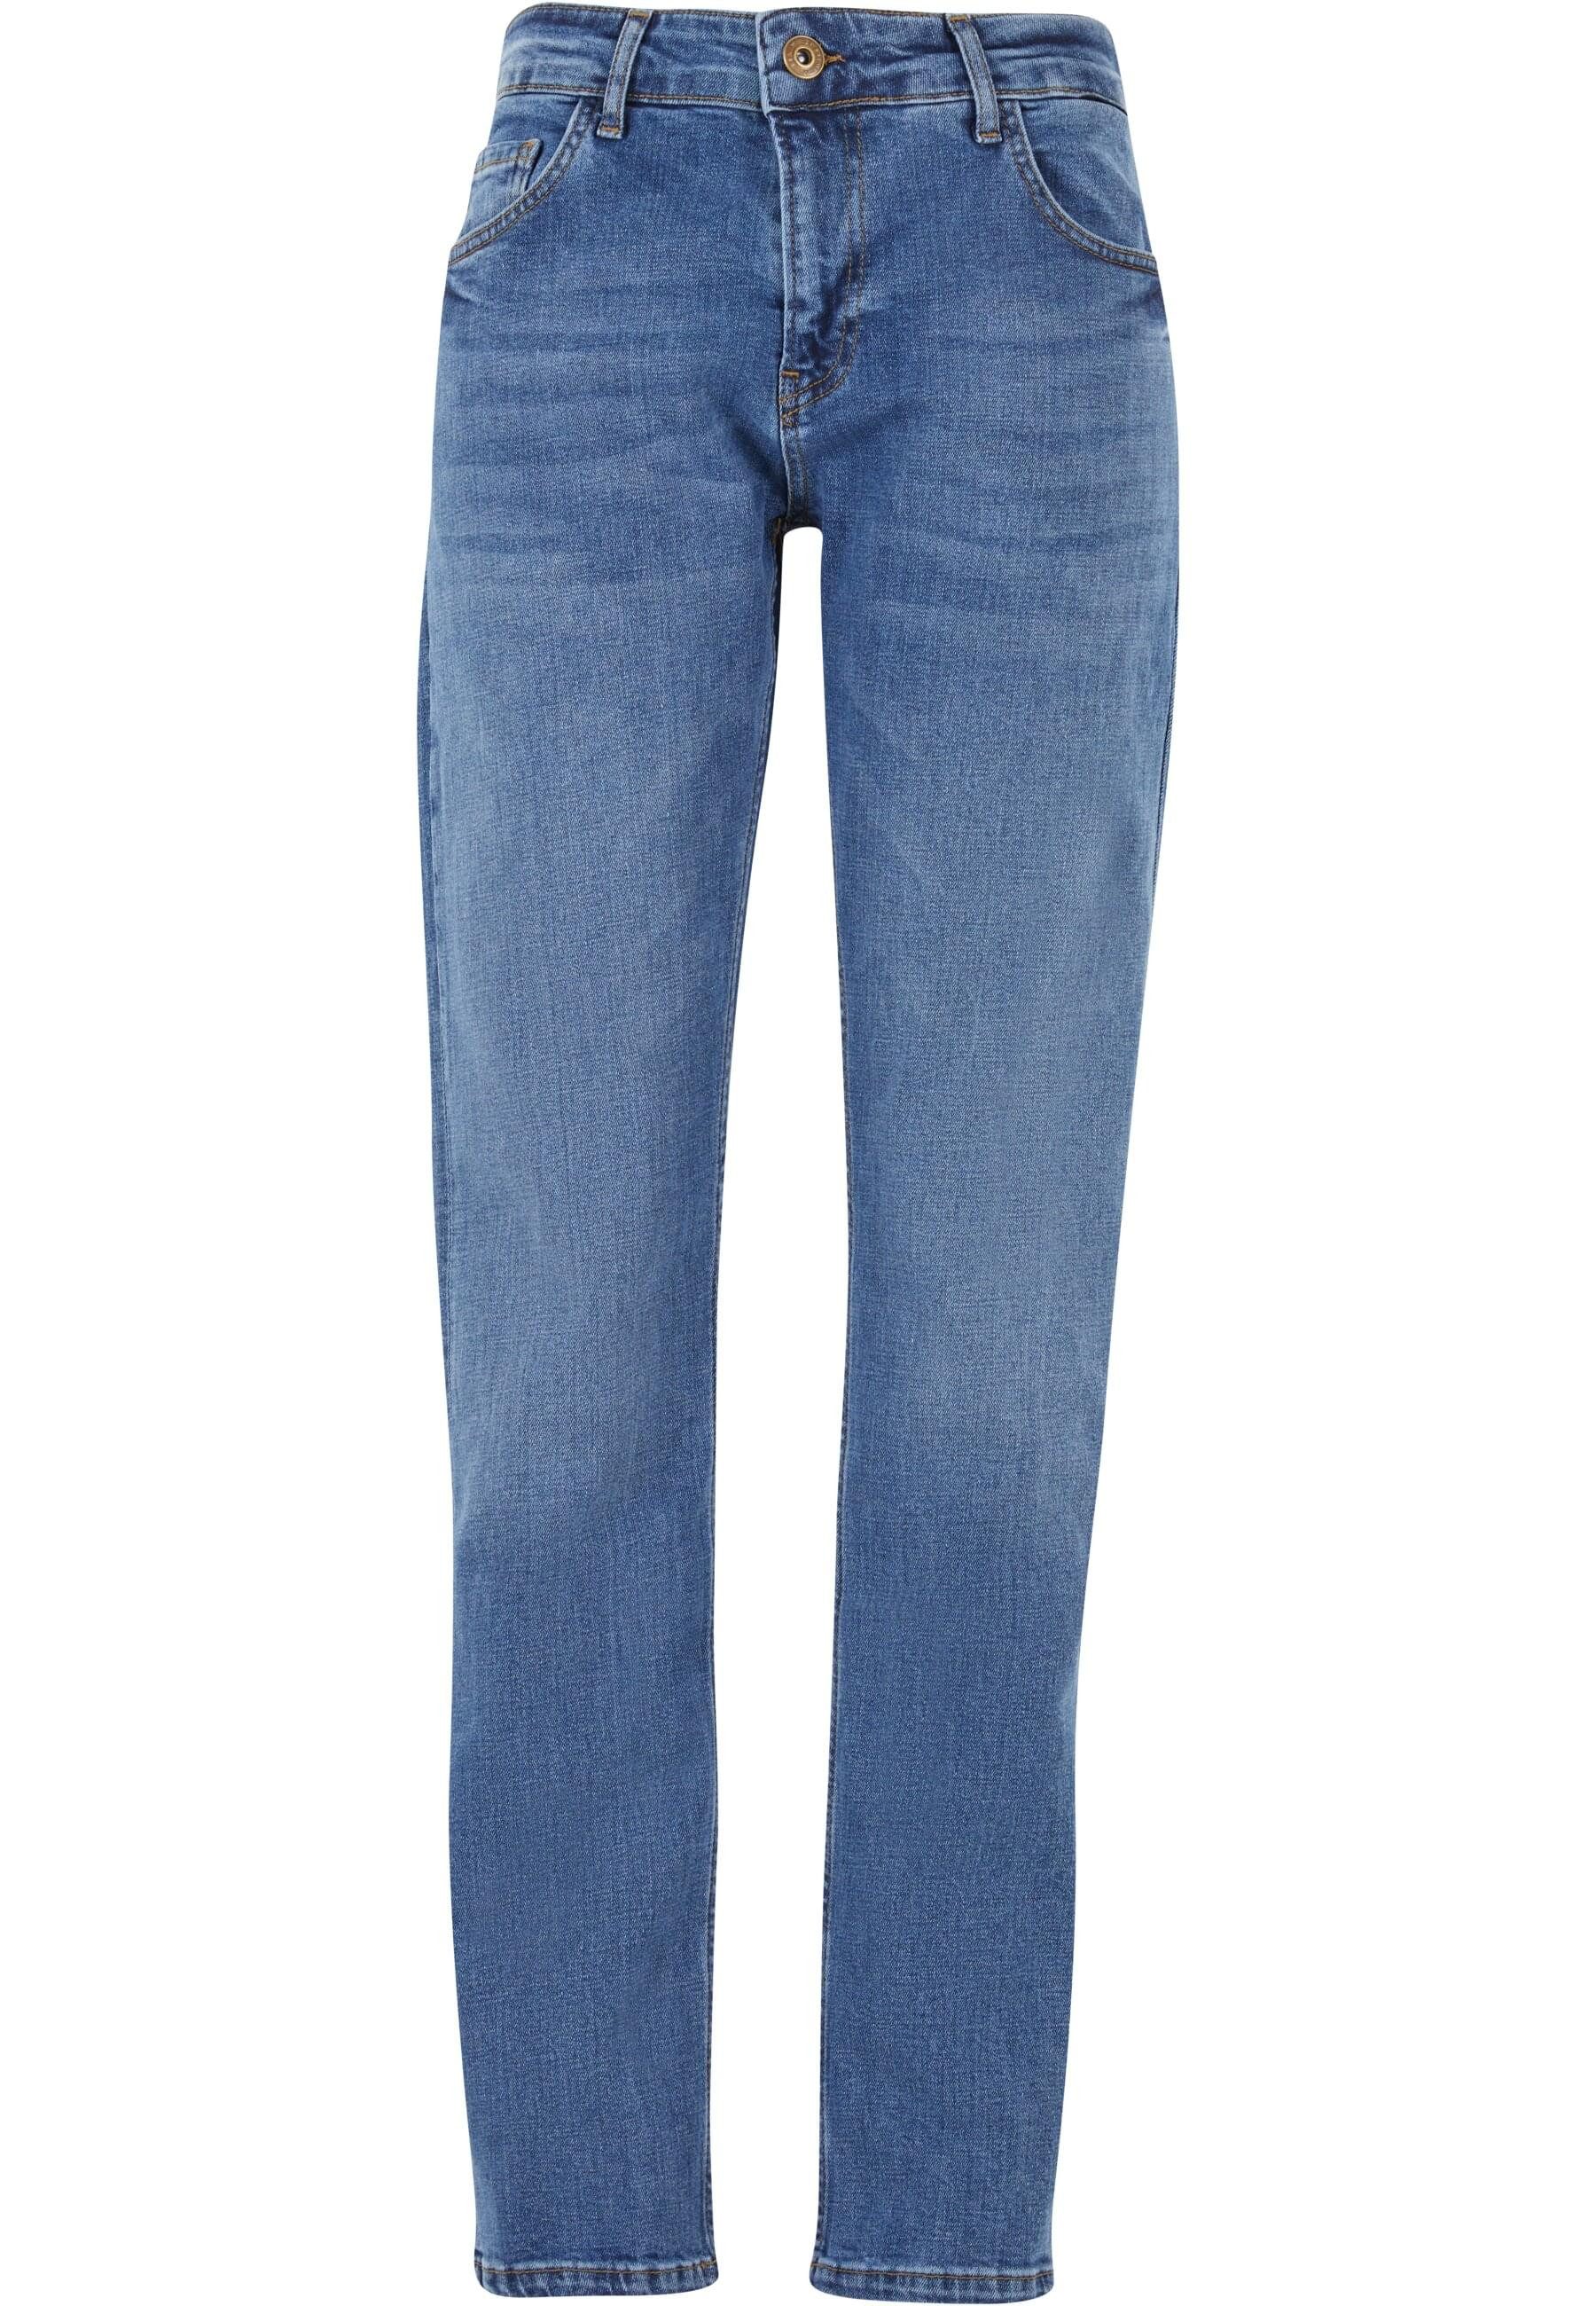 2Y Premium Bequeme Jeans Herren 2Y Basic Straight Fit Denim